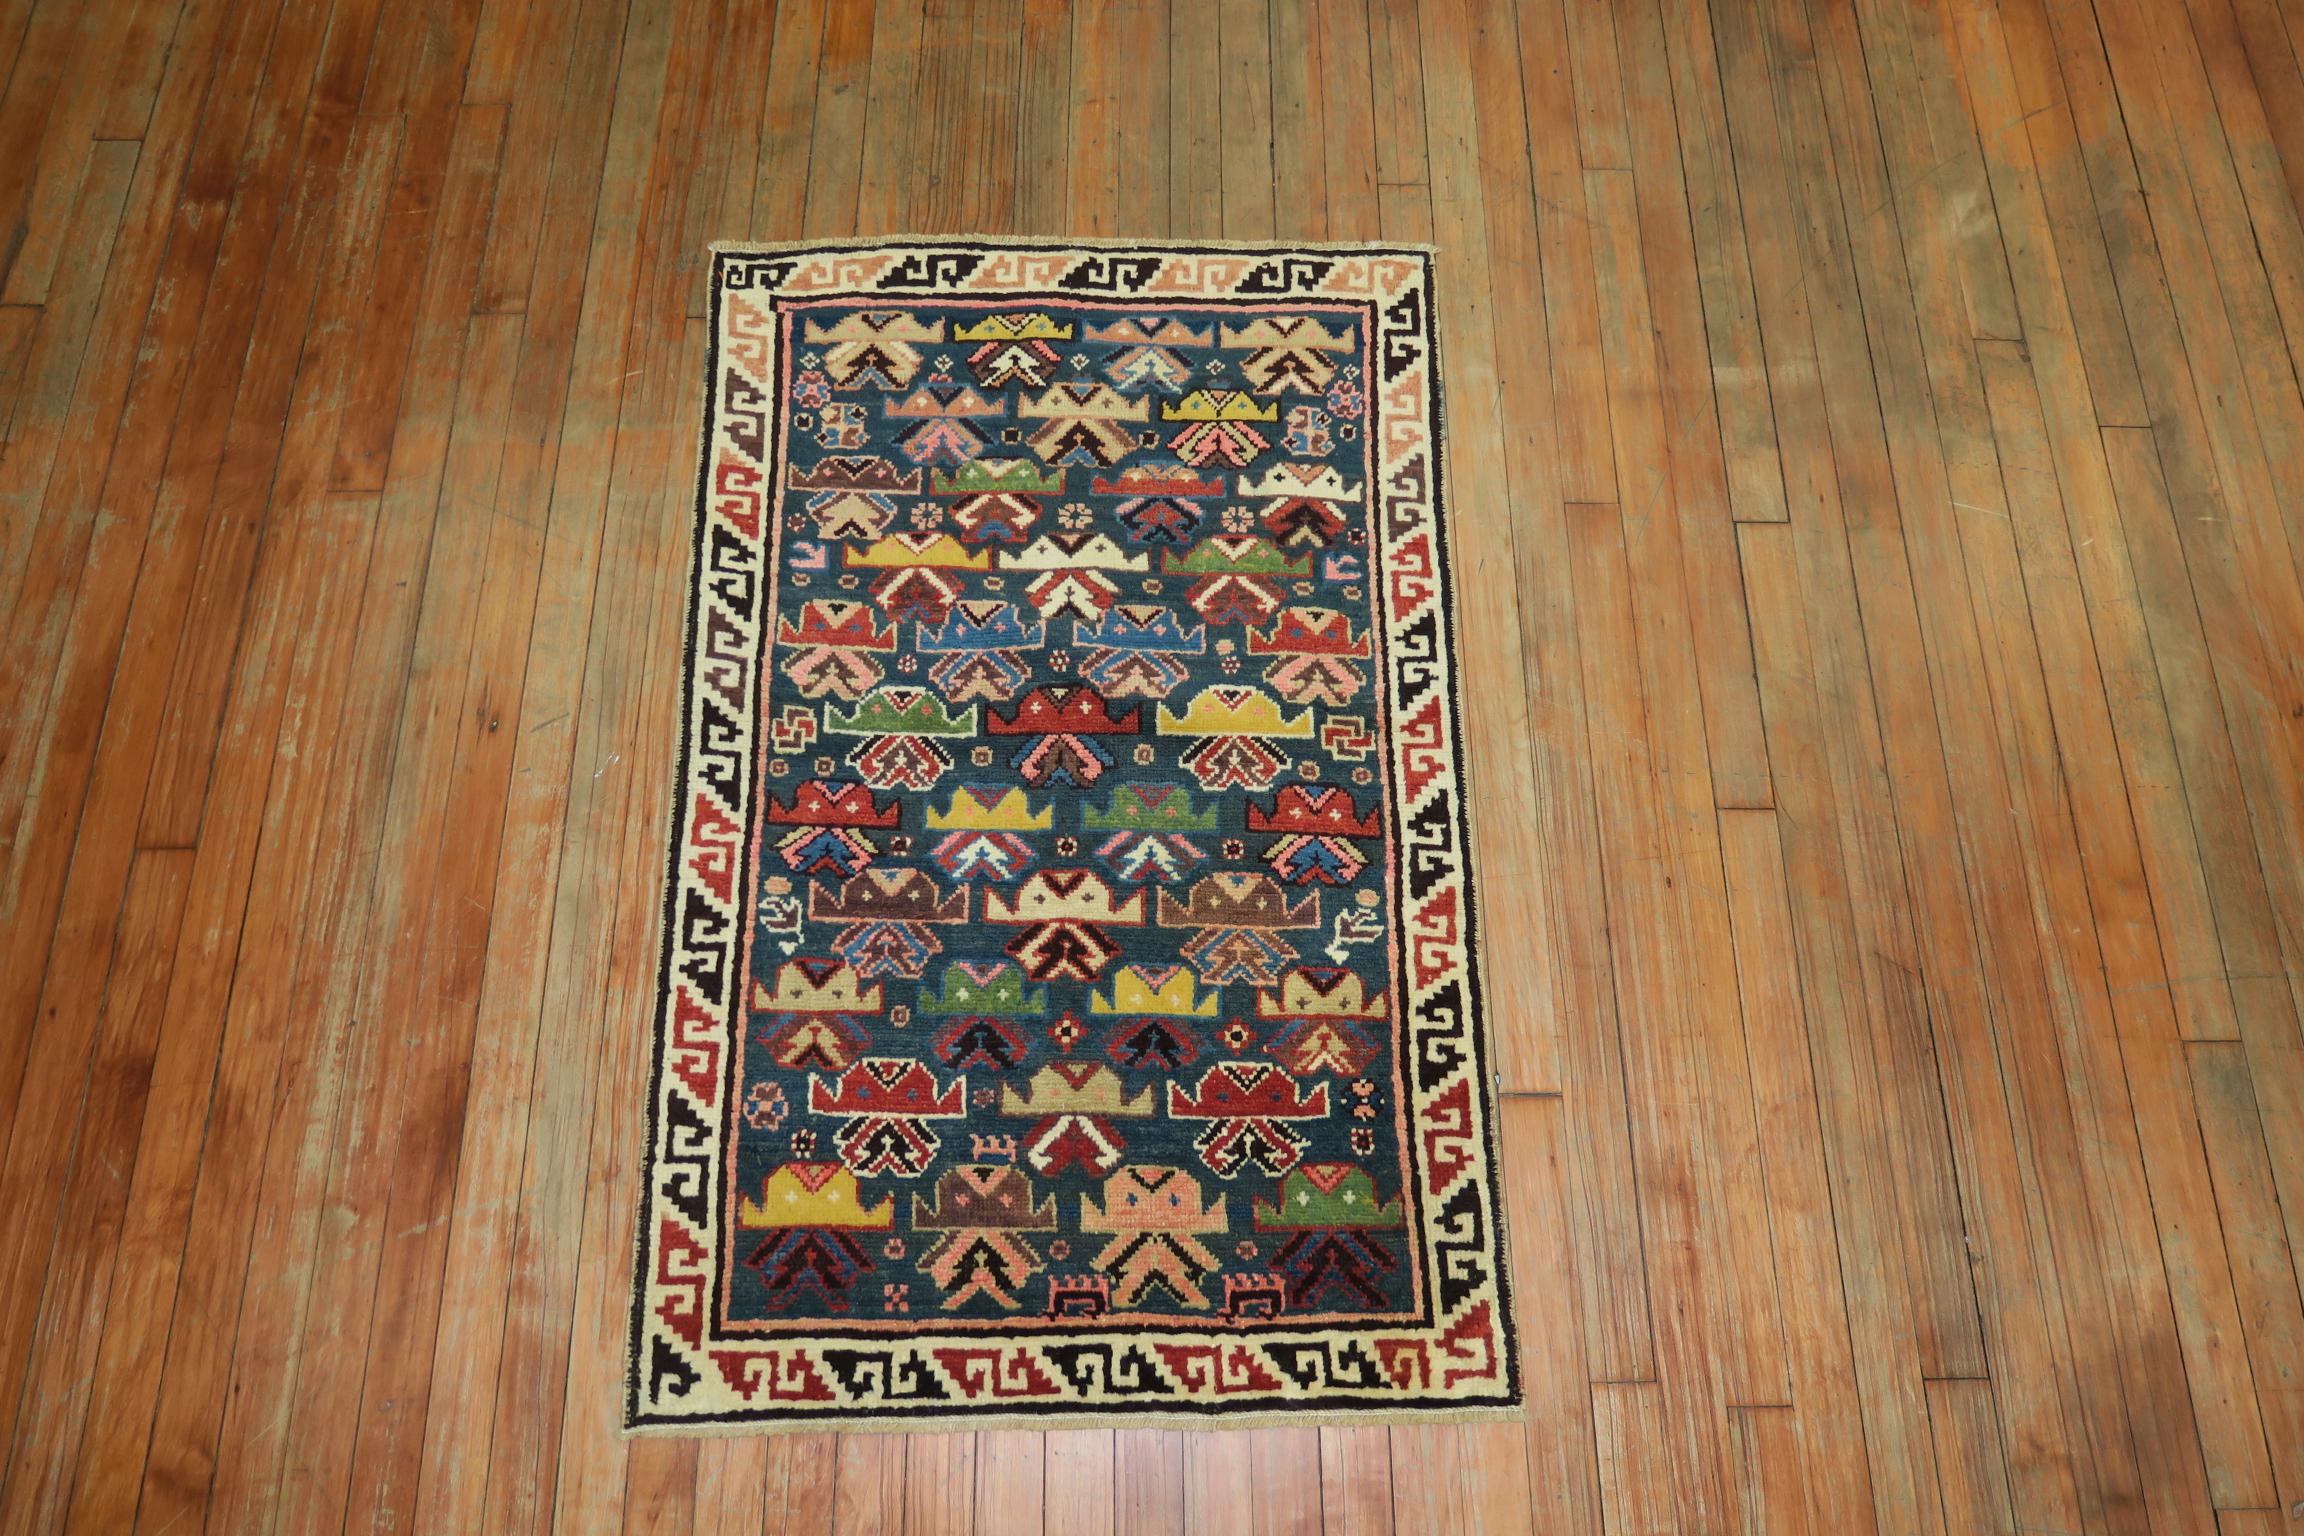 Ein süßer kaukasischer Kuba-Teppich aus den 1920er Jahren mit einem hübschen jeansblauen Grund und Akzenten in erdigem Senf, Rost, Braun und sanften Rottönen.

Maße: 2'6'' x 3'11''

Antike kaukasische Teppiche aus dem Dorf Schirwan gelten immer